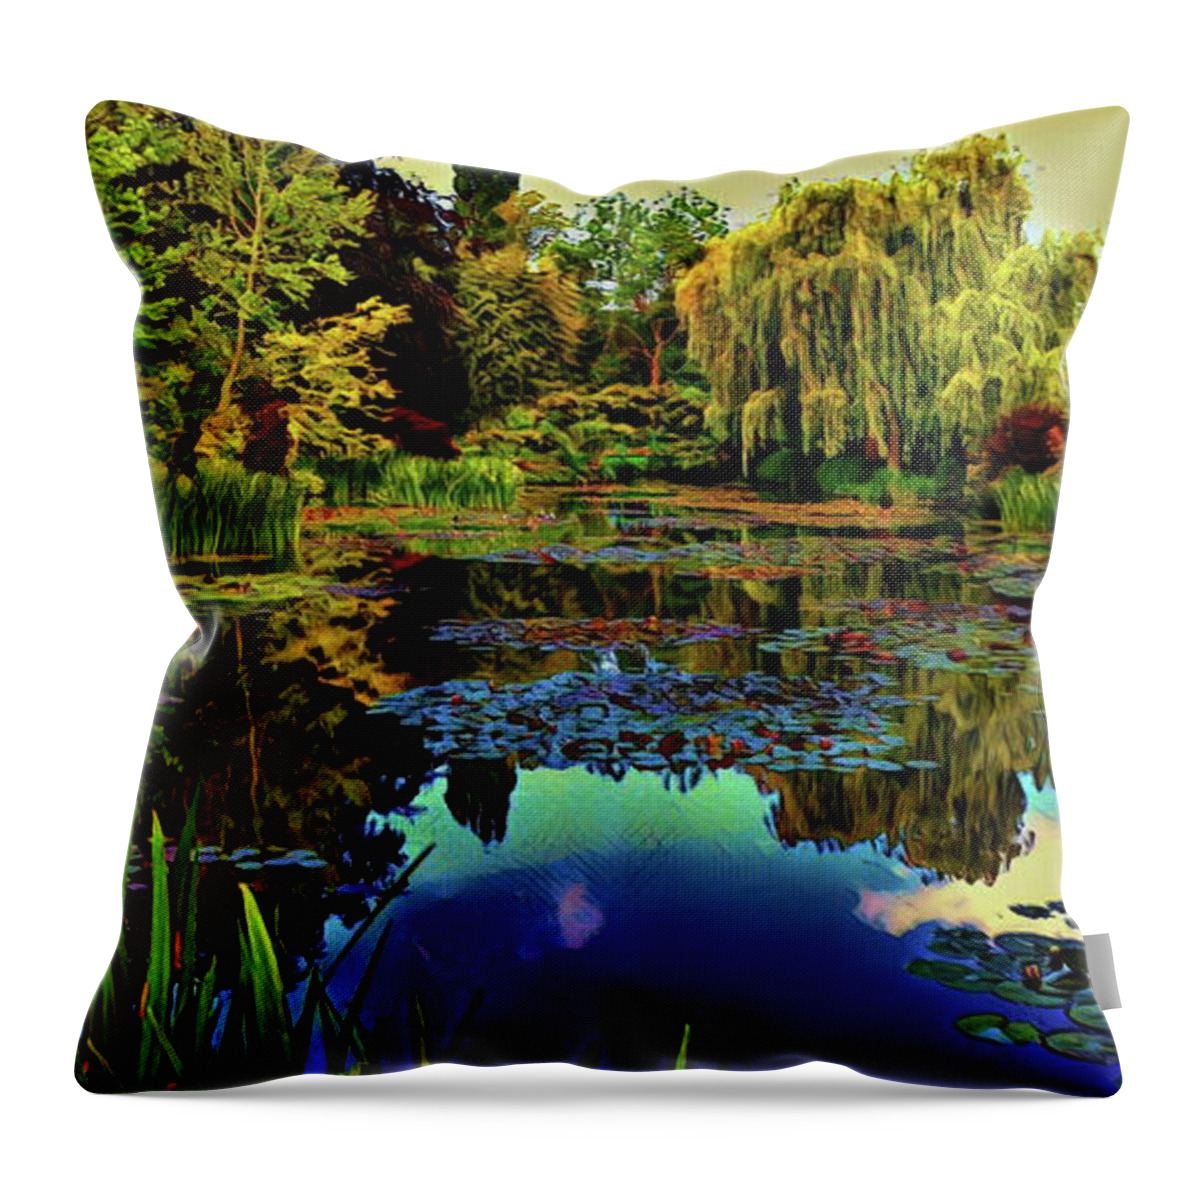 Artist Throw Pillow featuring the digital art Monet's flower garden - Water Lilies by Russ Harris